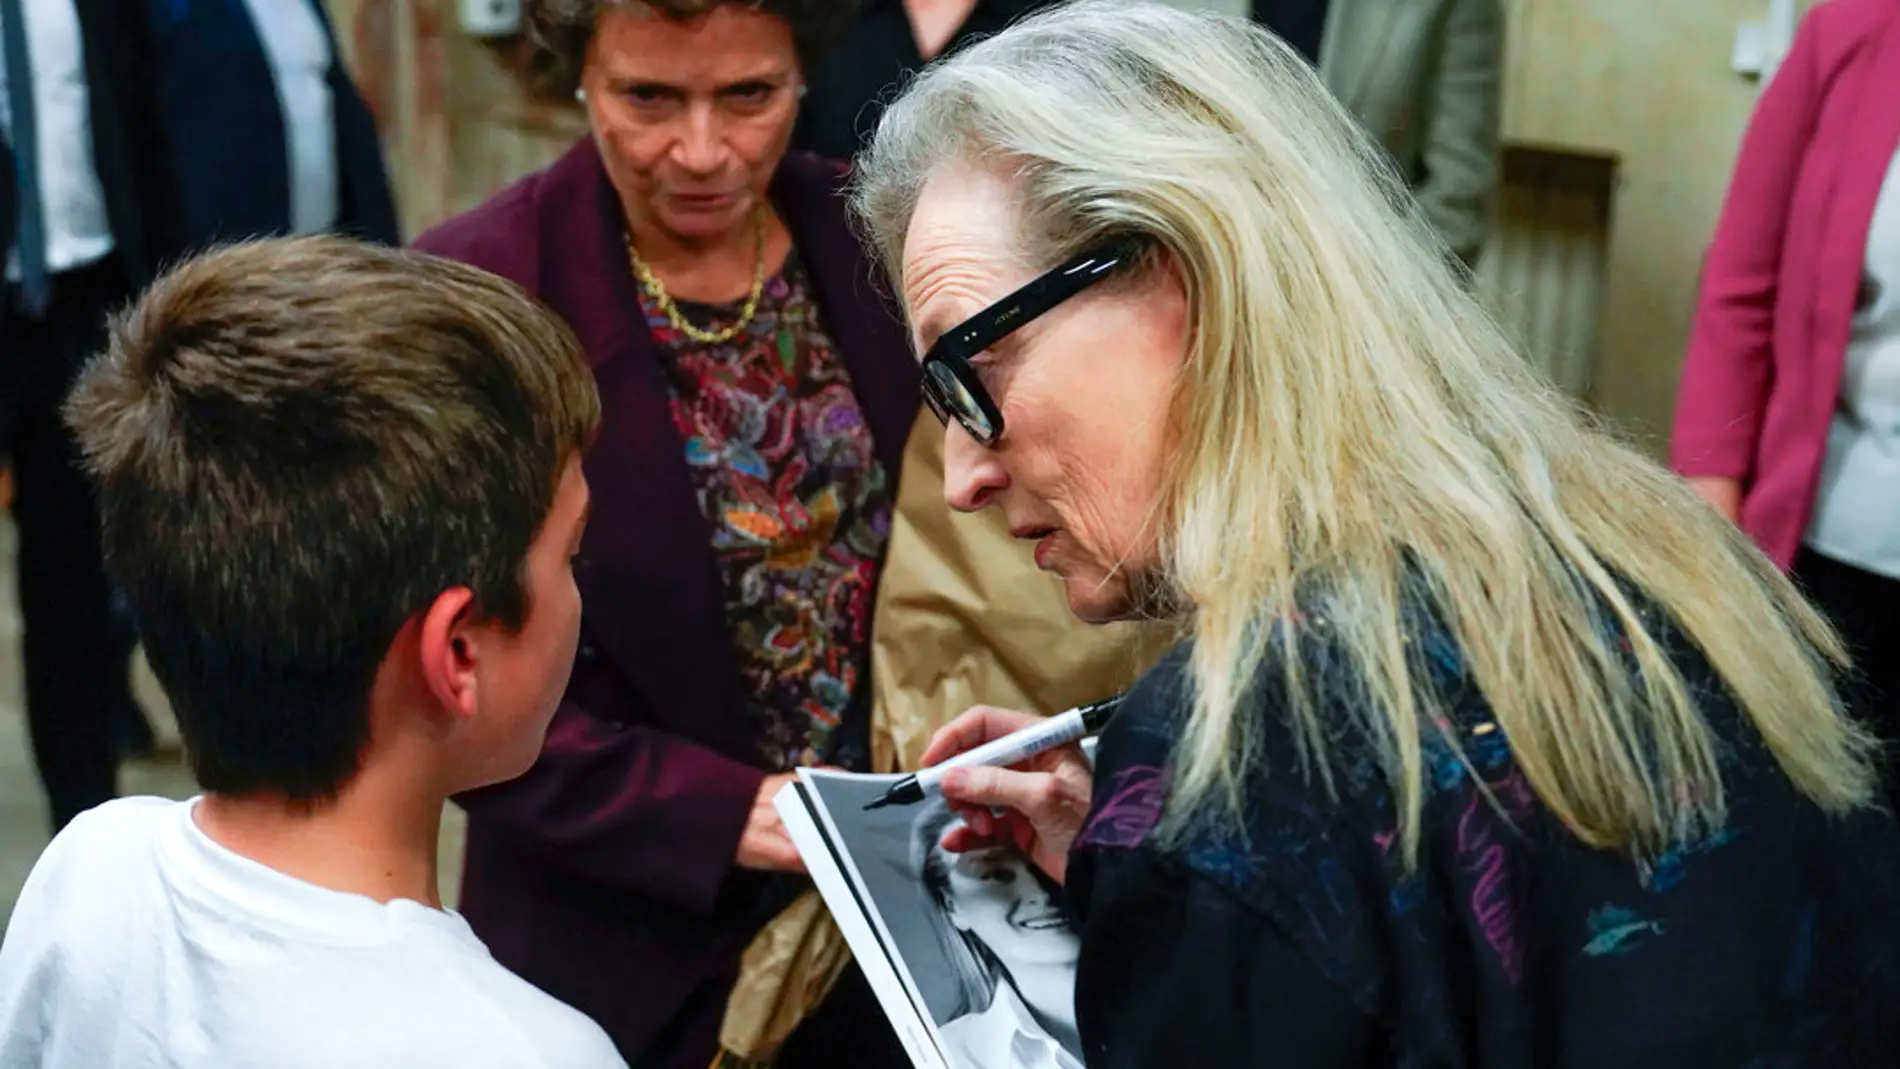 La emoción de Juan, el niño de 10 años que rompió en lágrimas al conocer a Meryl Streep